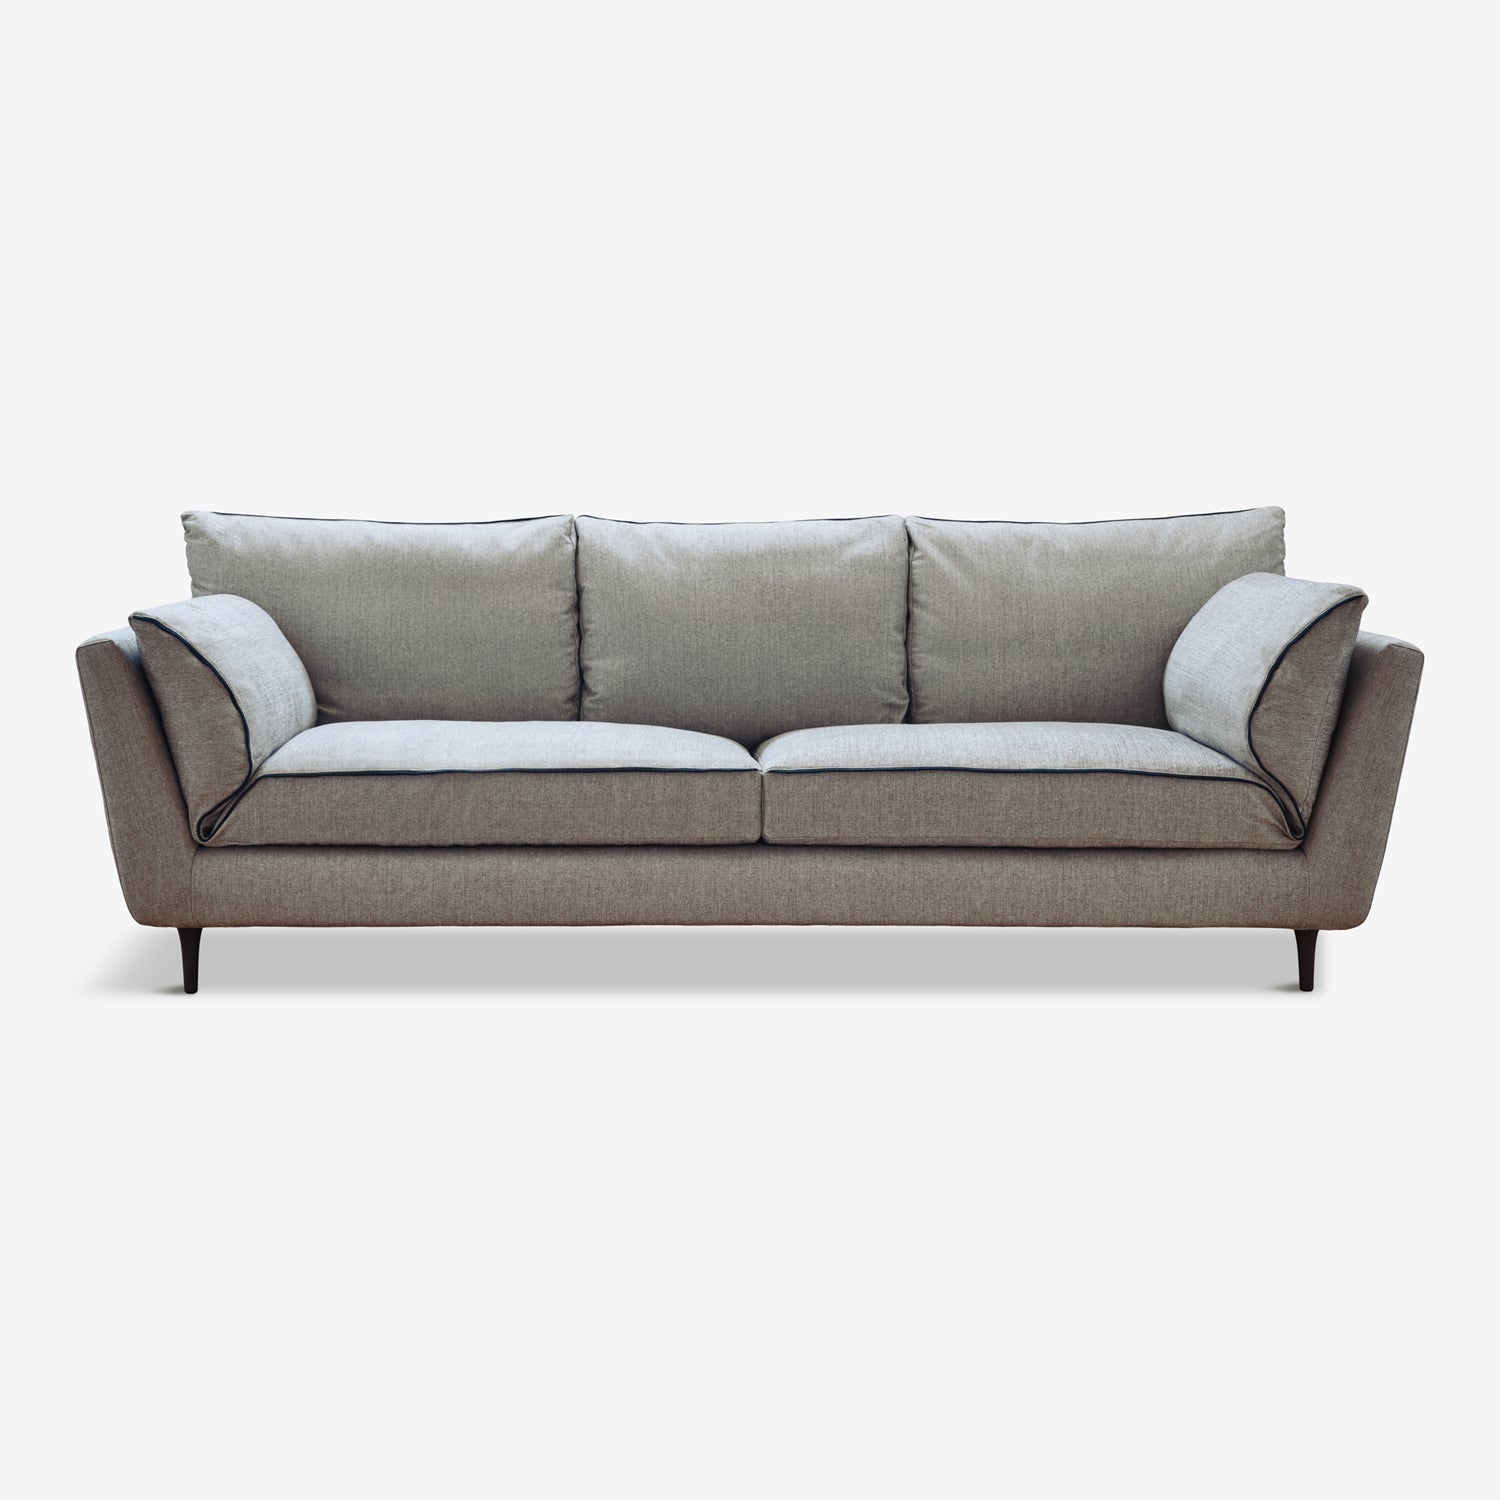 Granite Grey Sofa - Classy Comfort